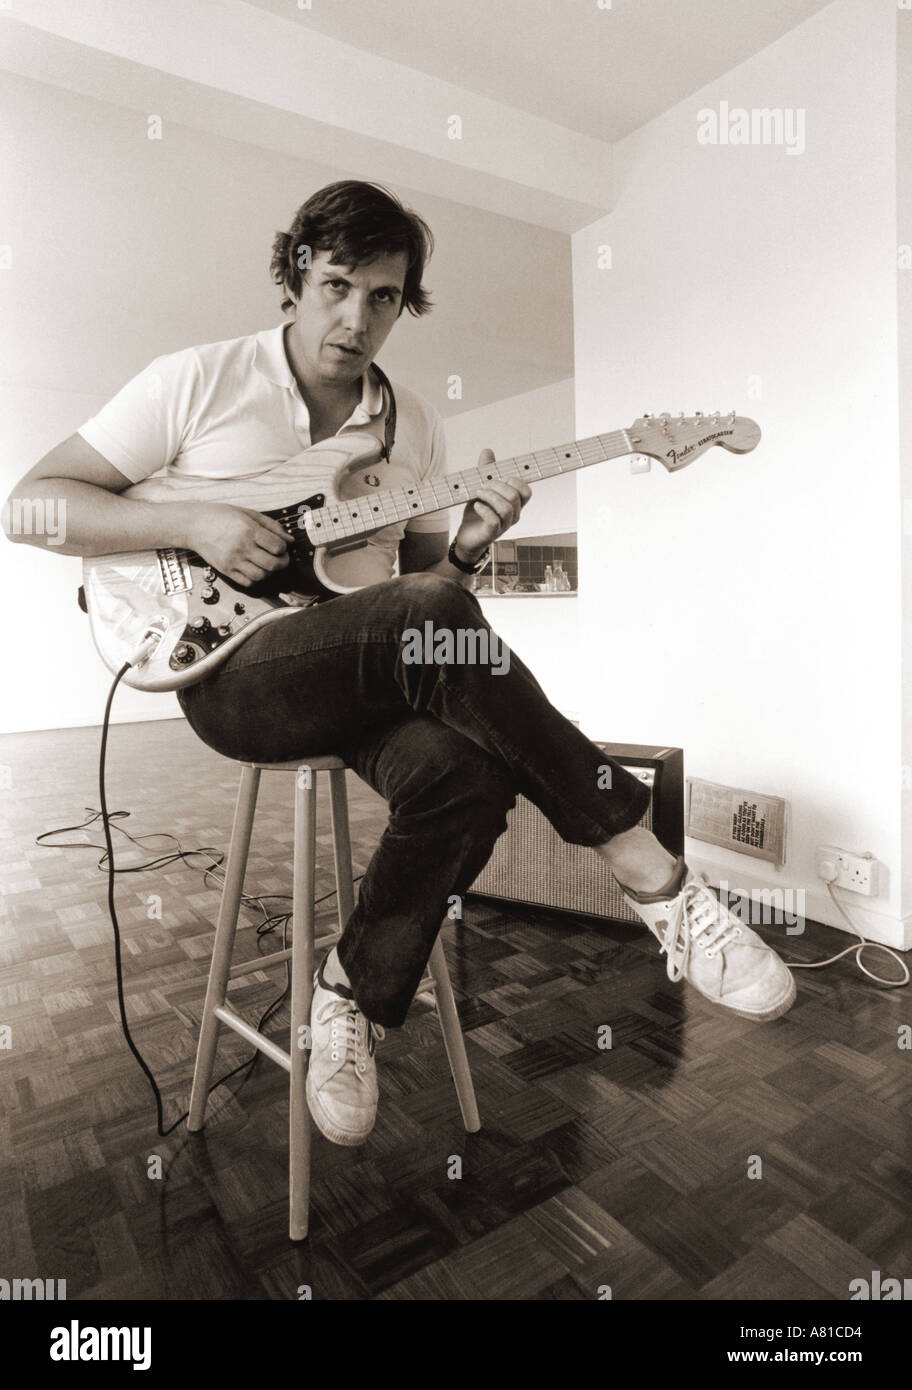 En blanco y negro de un hombre tocando una guitarra Fender Stratocaster sentado en un taburete con las piernas cruzadas en una habitación vacía Vibrolux amp Foto de stock